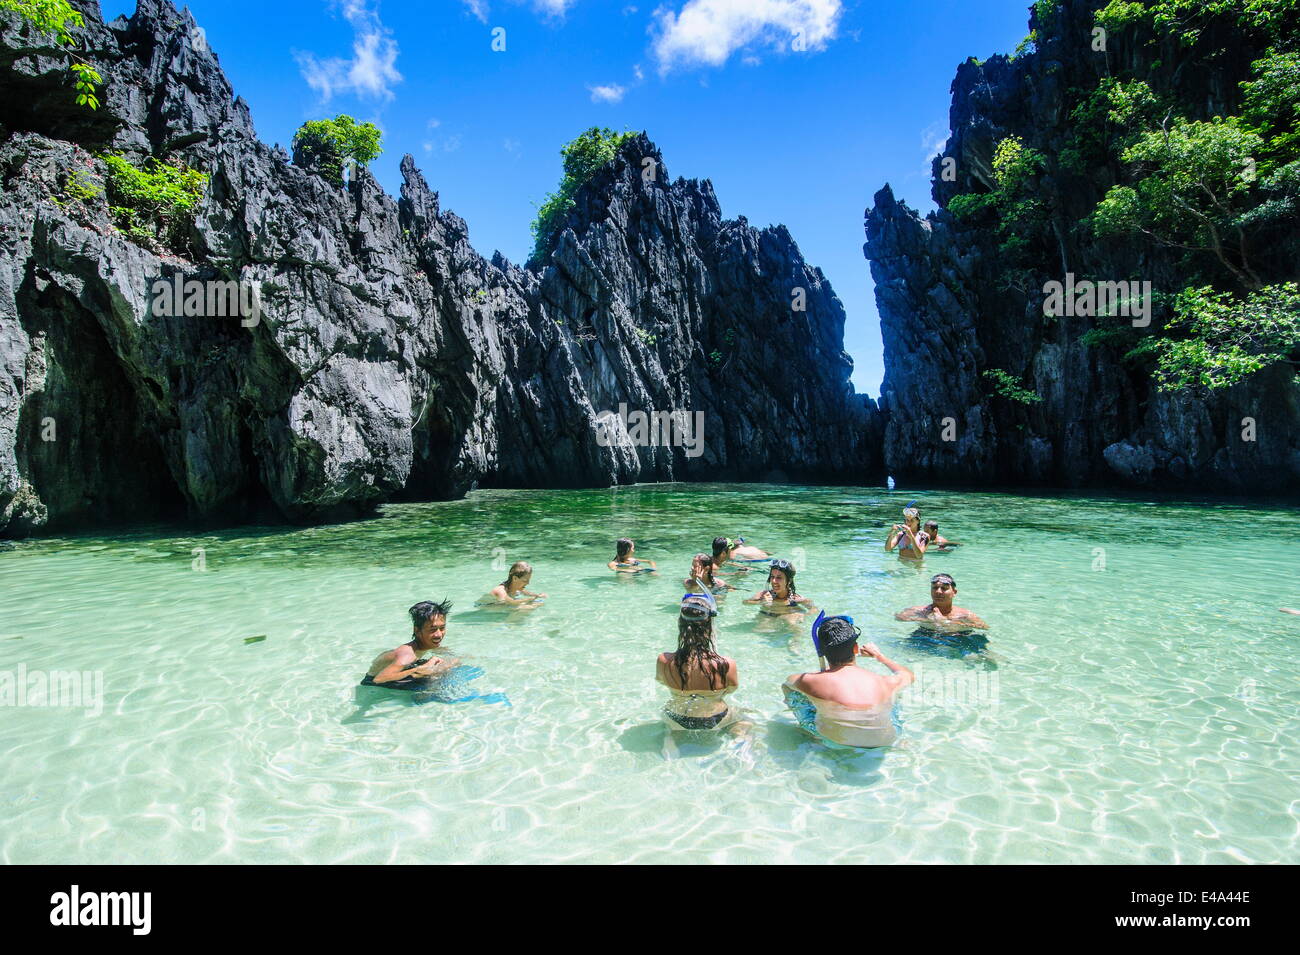 Les touristes dans la baie cachée avec de l'eau claire comme du cristal dans l'archipel de Bacuit, Palawan, Philippines, Asie du Sud, Asie Banque D'Images